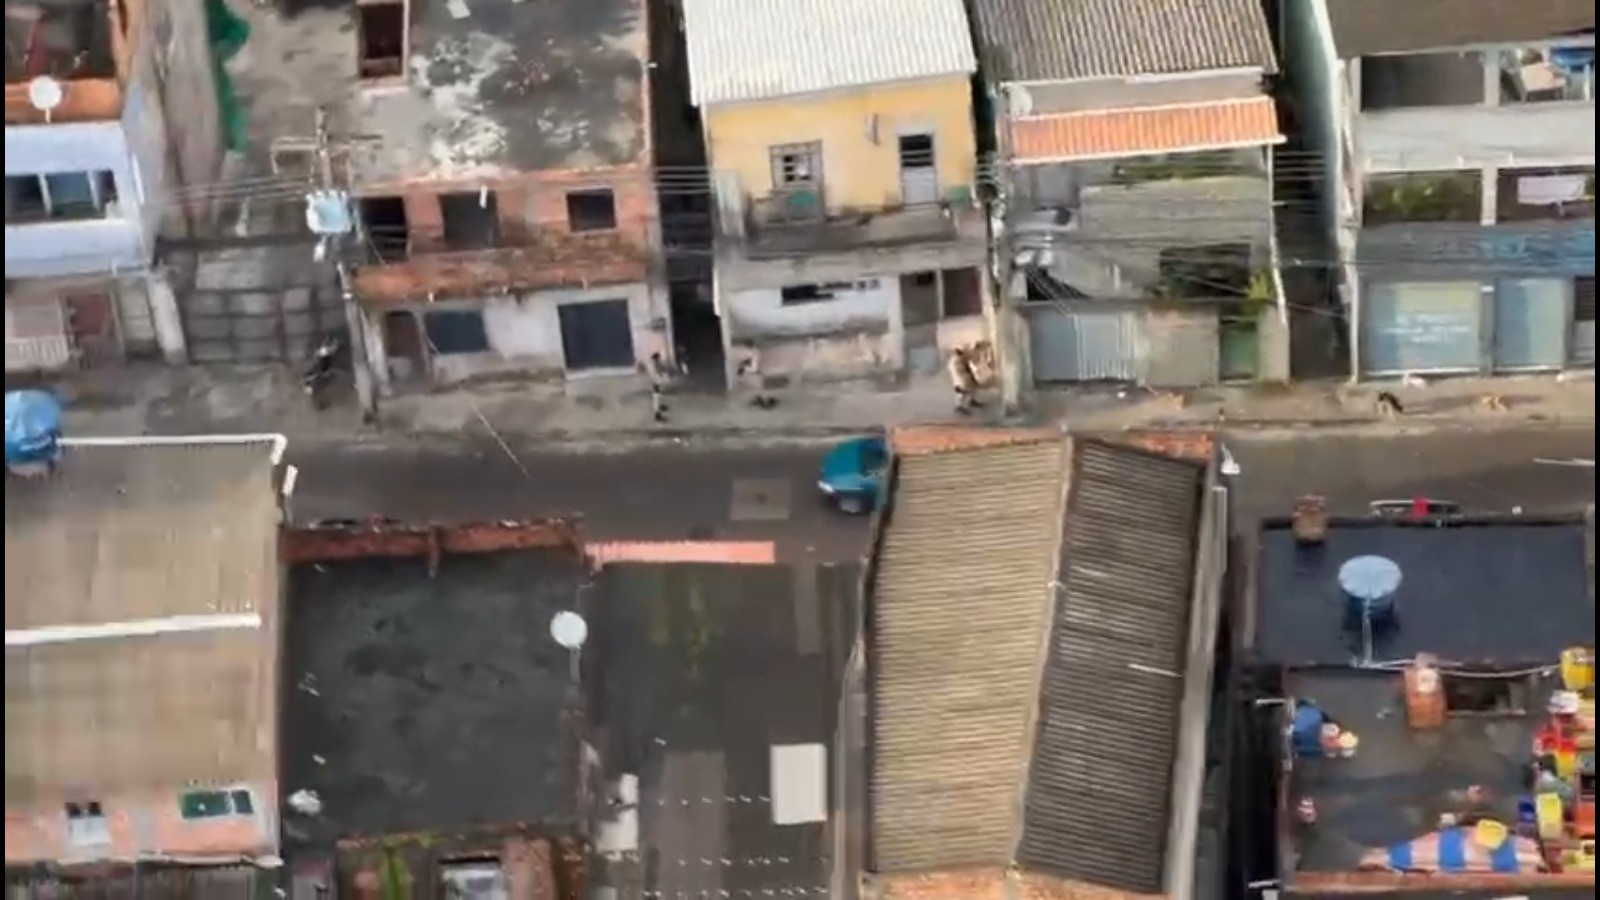 Cabeça humana é encontrada dentro de lata em bairro que enfrenta onda de violência no subúrbio de Salvador